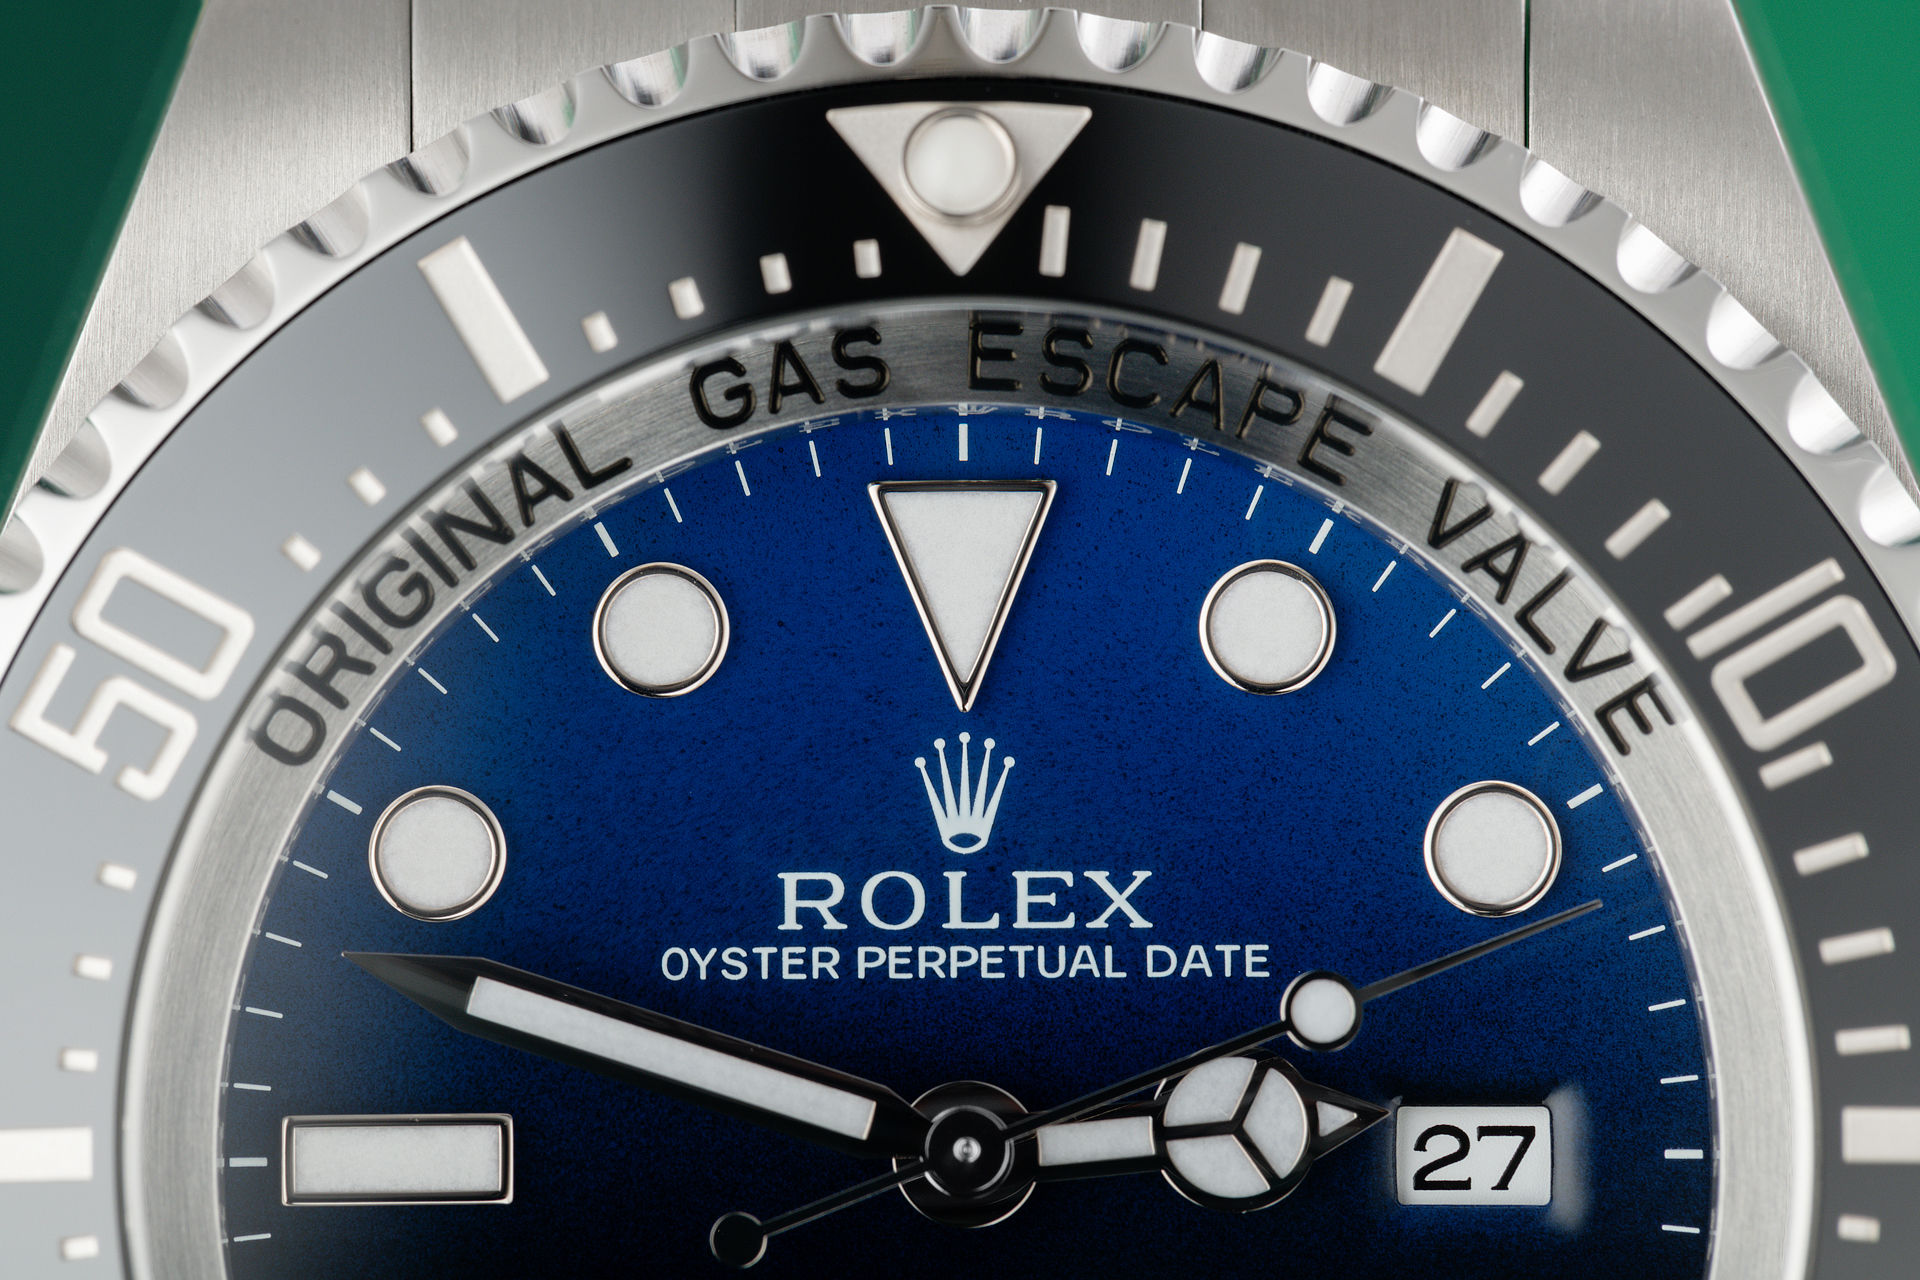 D-Blue "5 Year Warranty" | ref 116660 | Rolex Sea-Dweller Deepsea